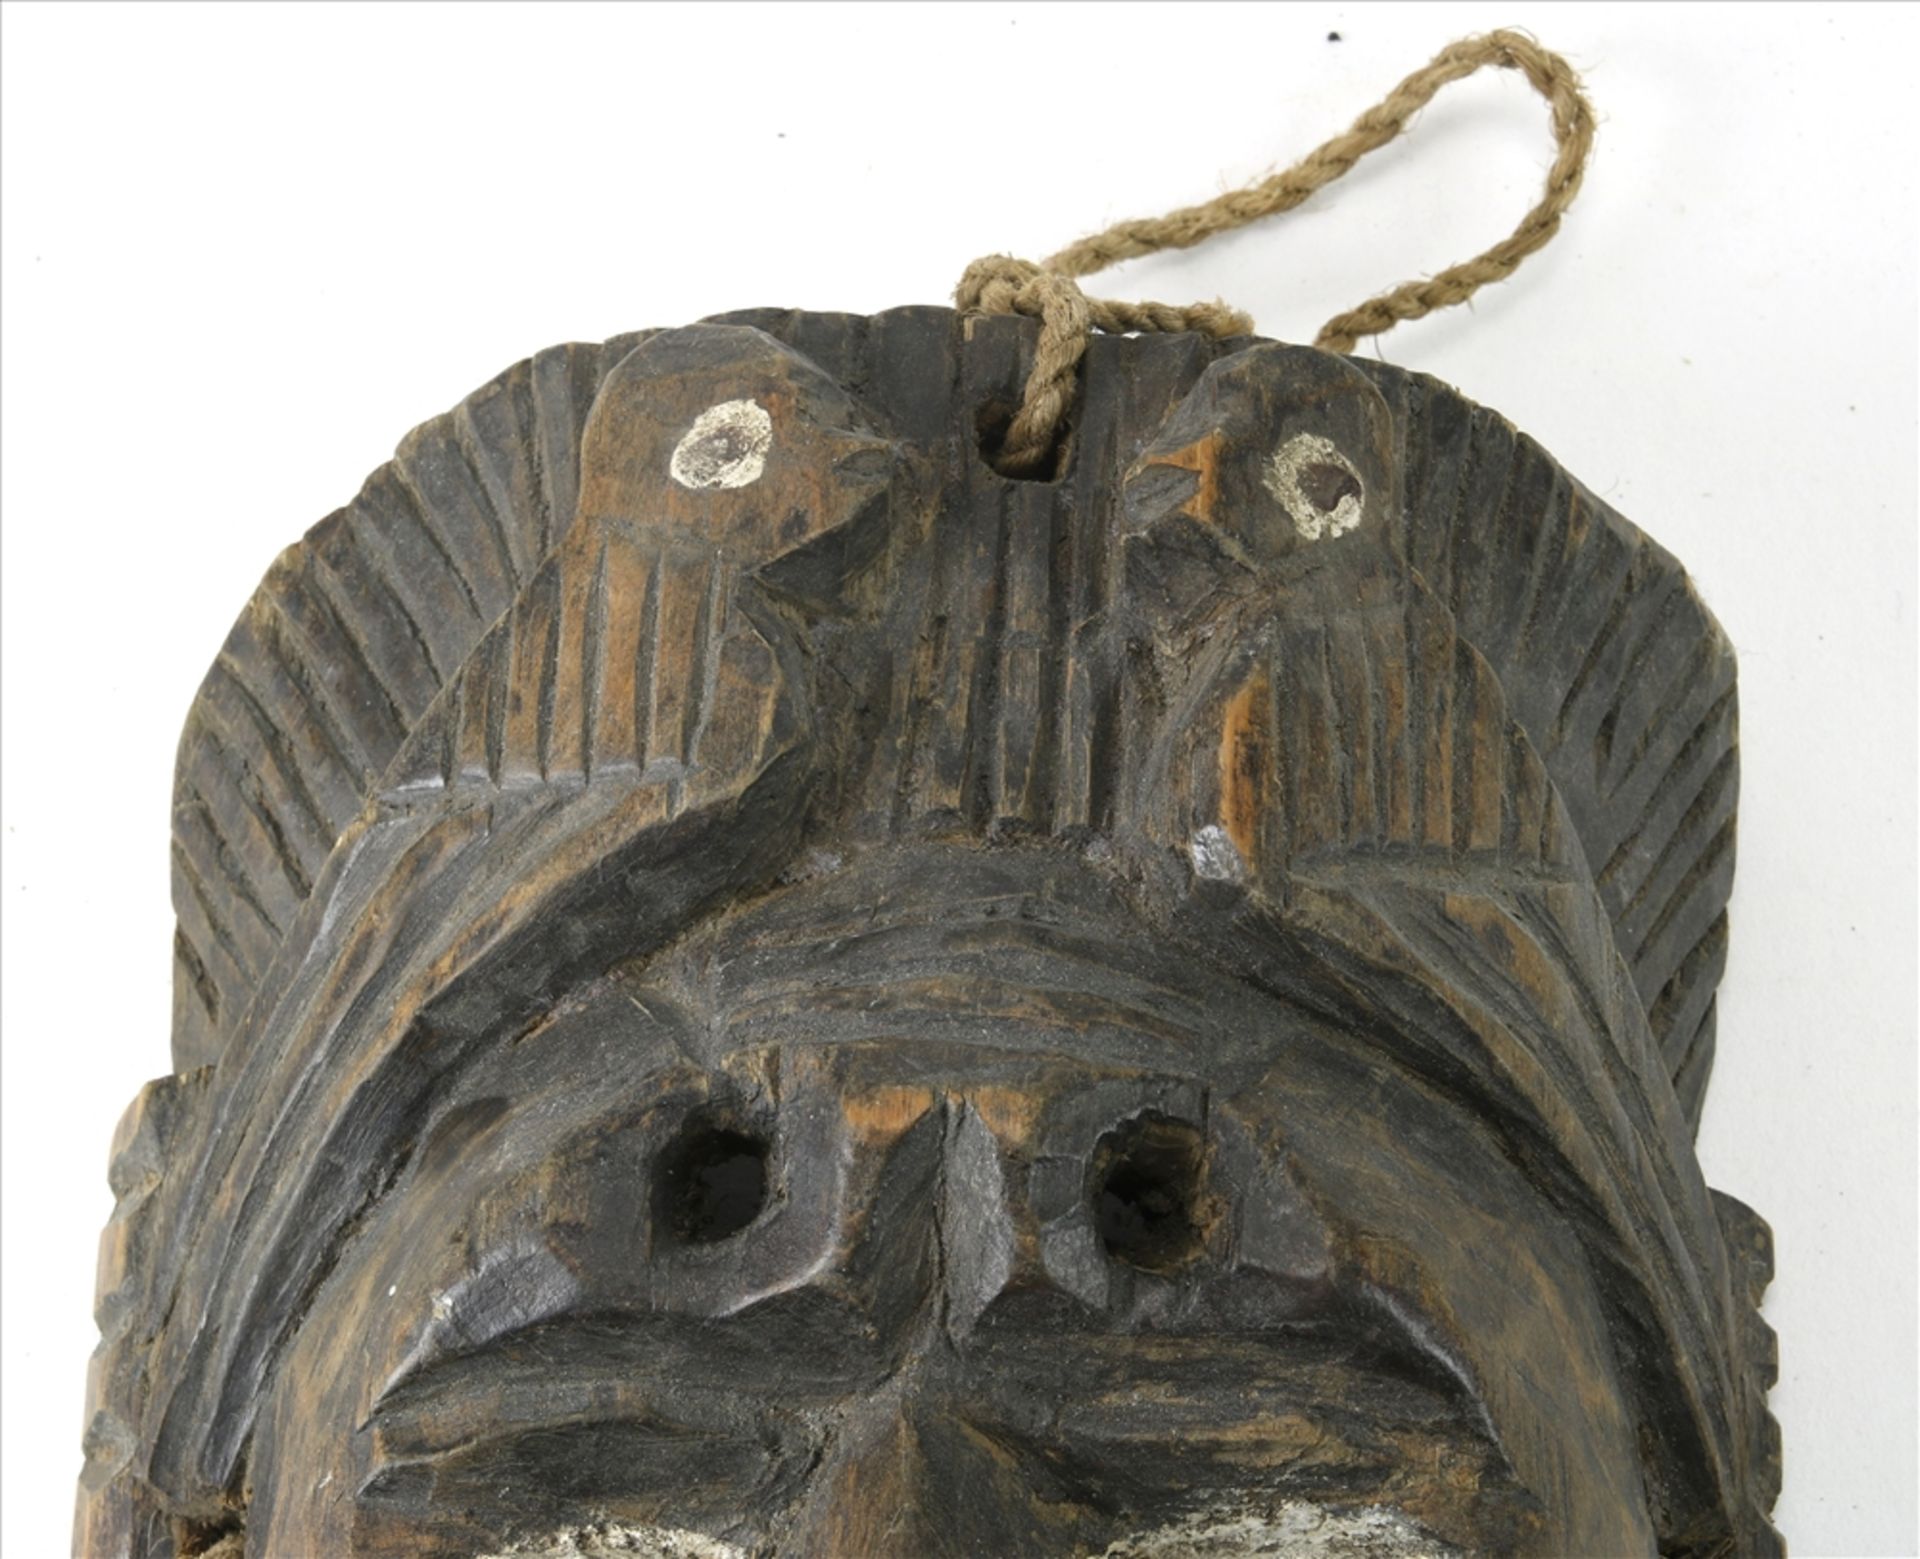 Maske Wohl Kongo um 1900. Hartholz, teils mit Vögeln geschnitzt, die Augen staffiert. Größe ca. 24,5 - Bild 5 aus 7